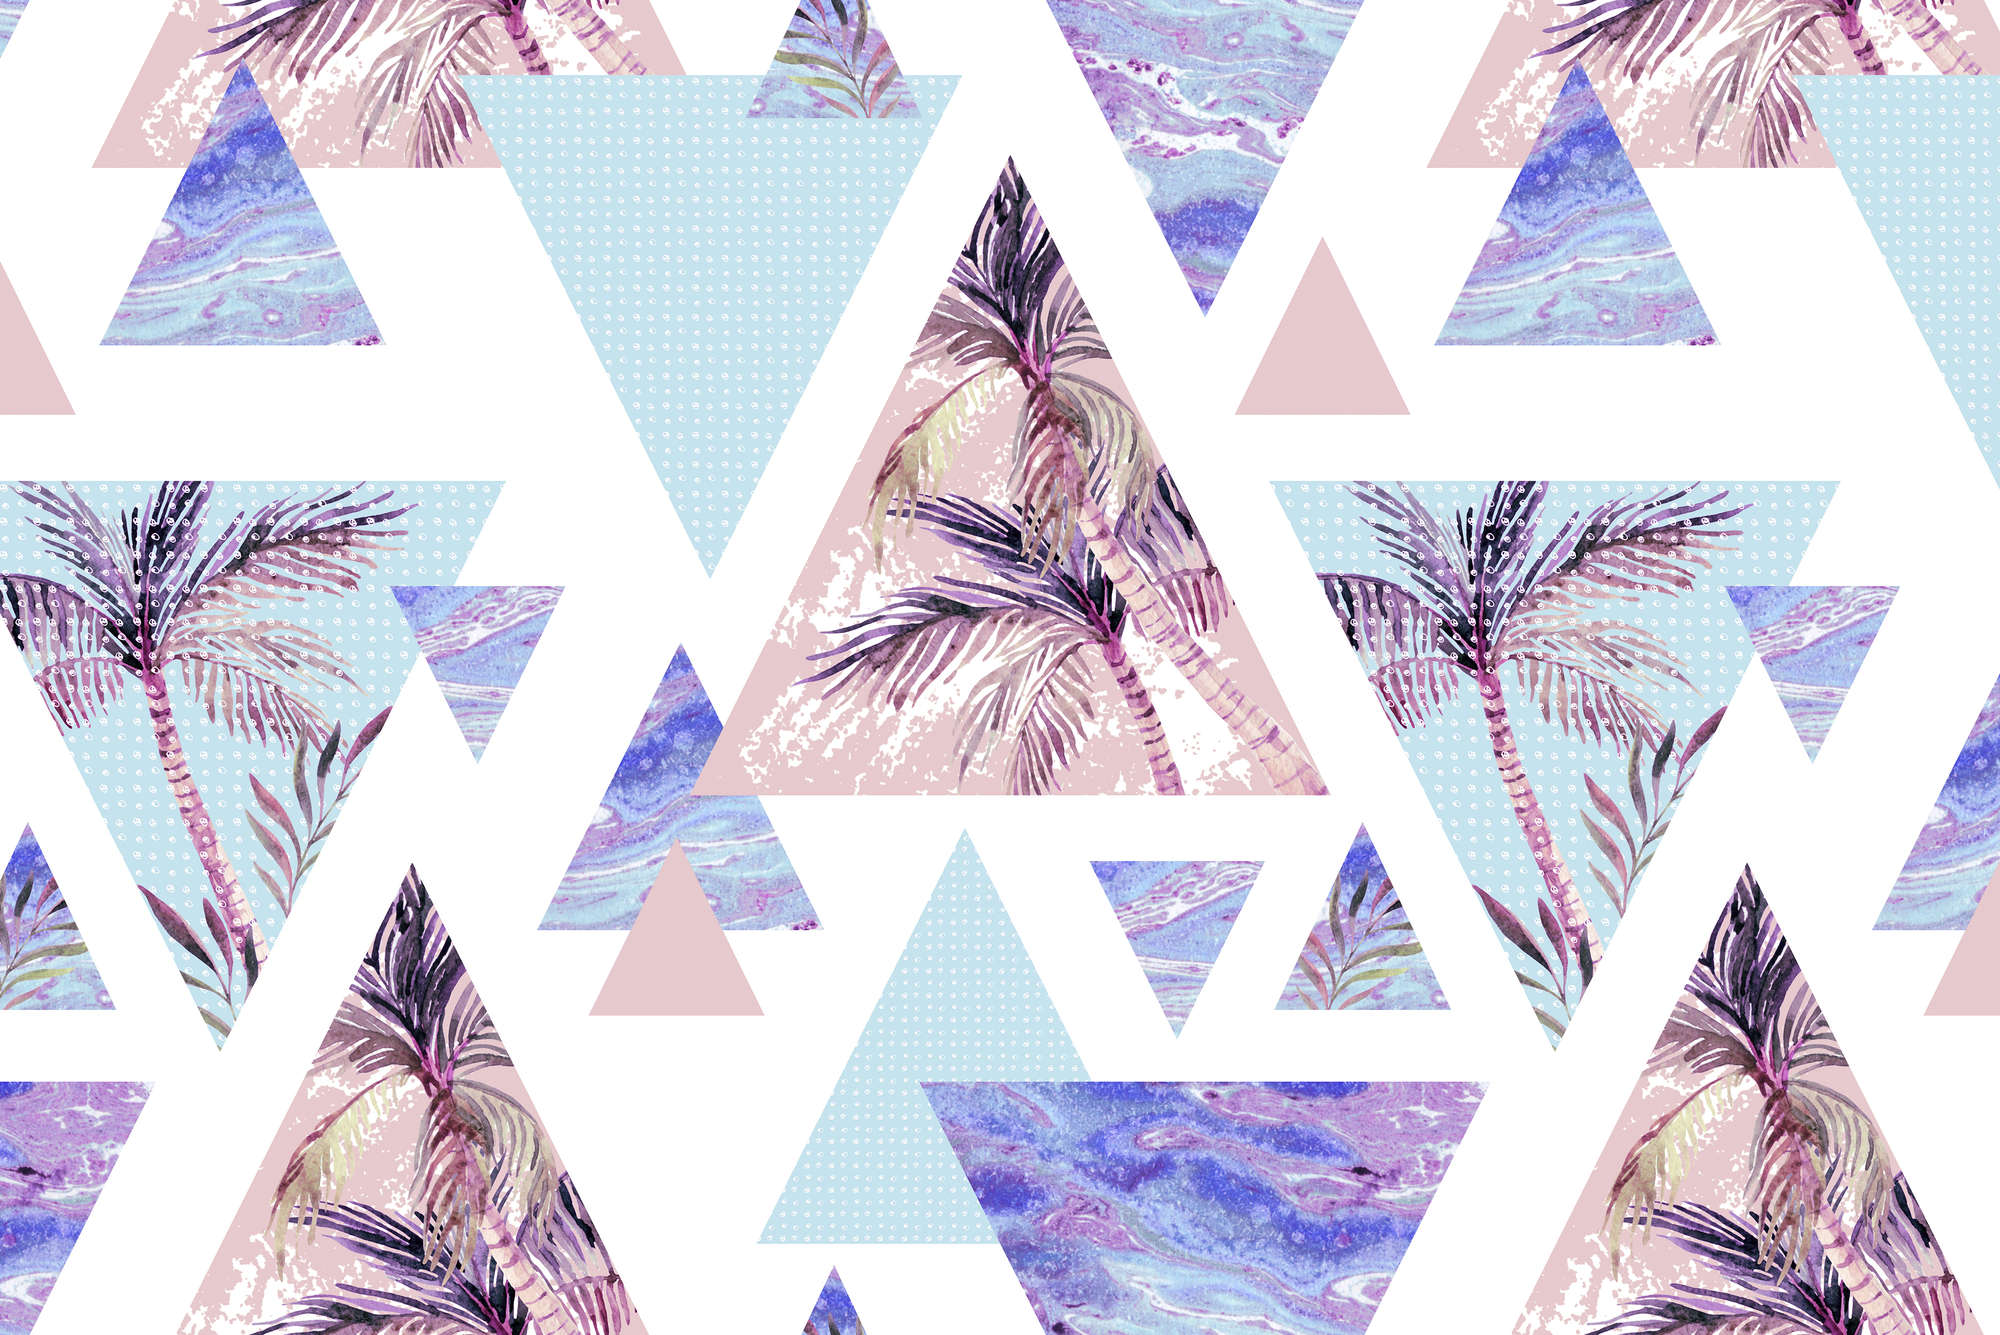             Papel pintado gráfico Triángulos con motivos de palmeras sobre tejido no tejido liso mate
        